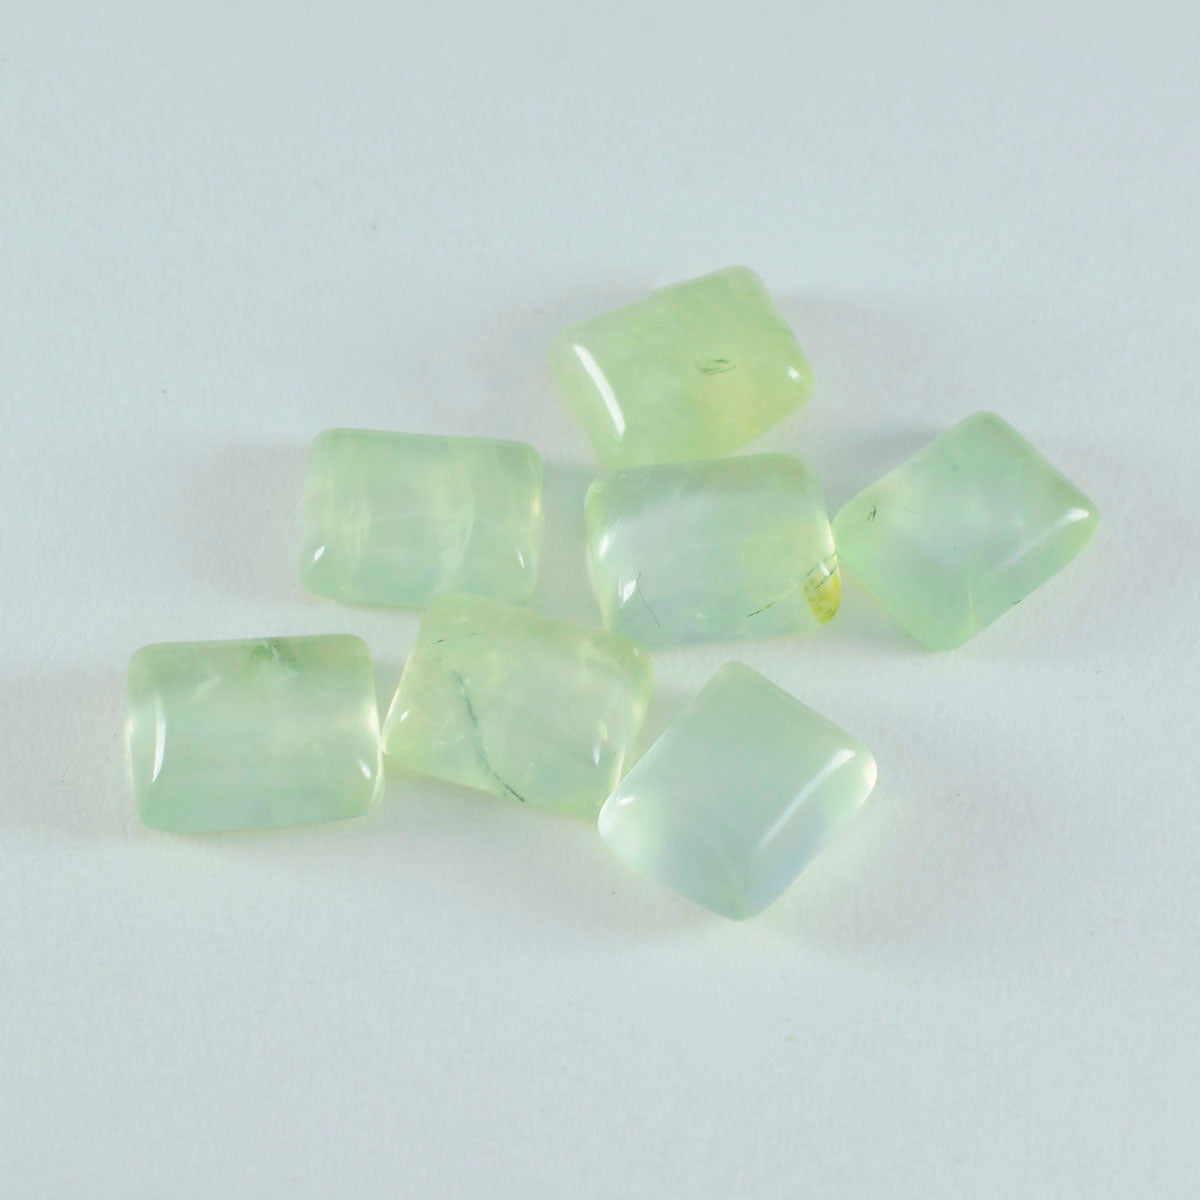 riyogems 1st grön prehnite cabochon 10x14 mm oktagon form god kvalitet lös pärla